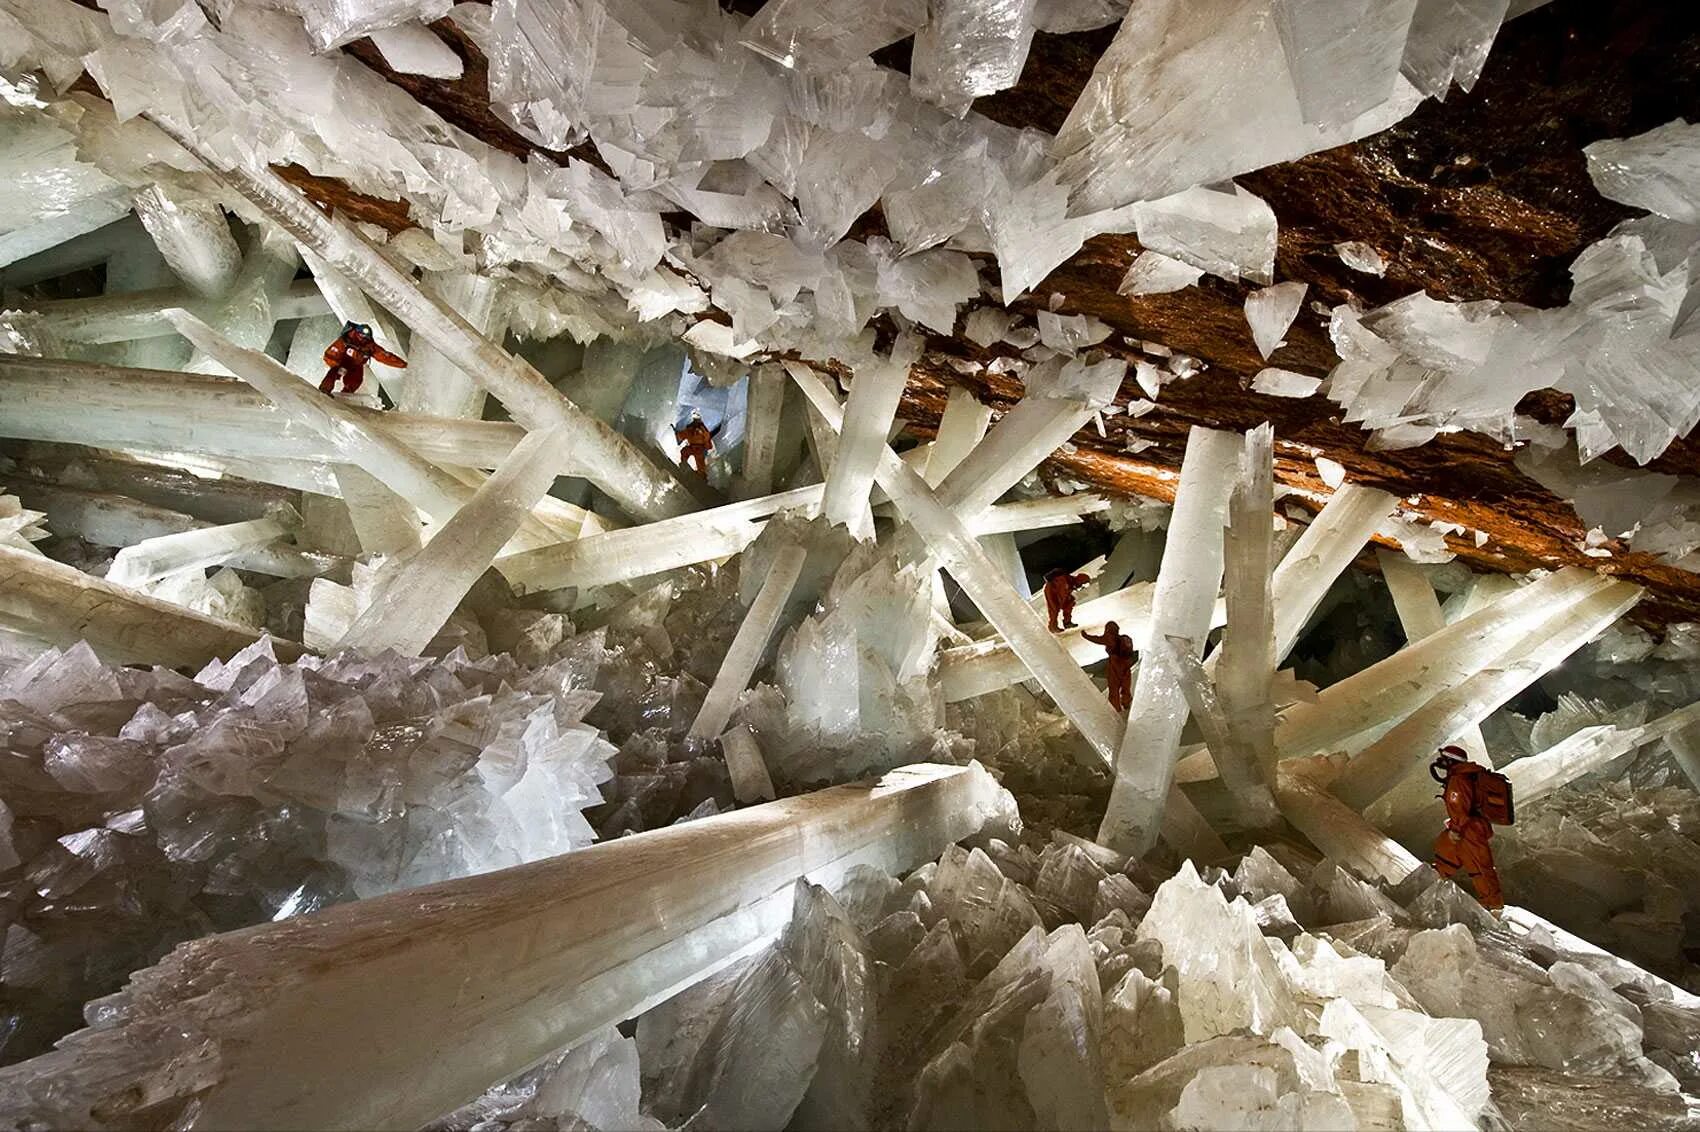 Кристалл шахты. Кристальная пещера гигантов Мексика. Пещера Куэва де Лос Кристалес. Пещера кристаллов в Мексике. Пещера кристаллов (Cueva de los cristales), Мексика.